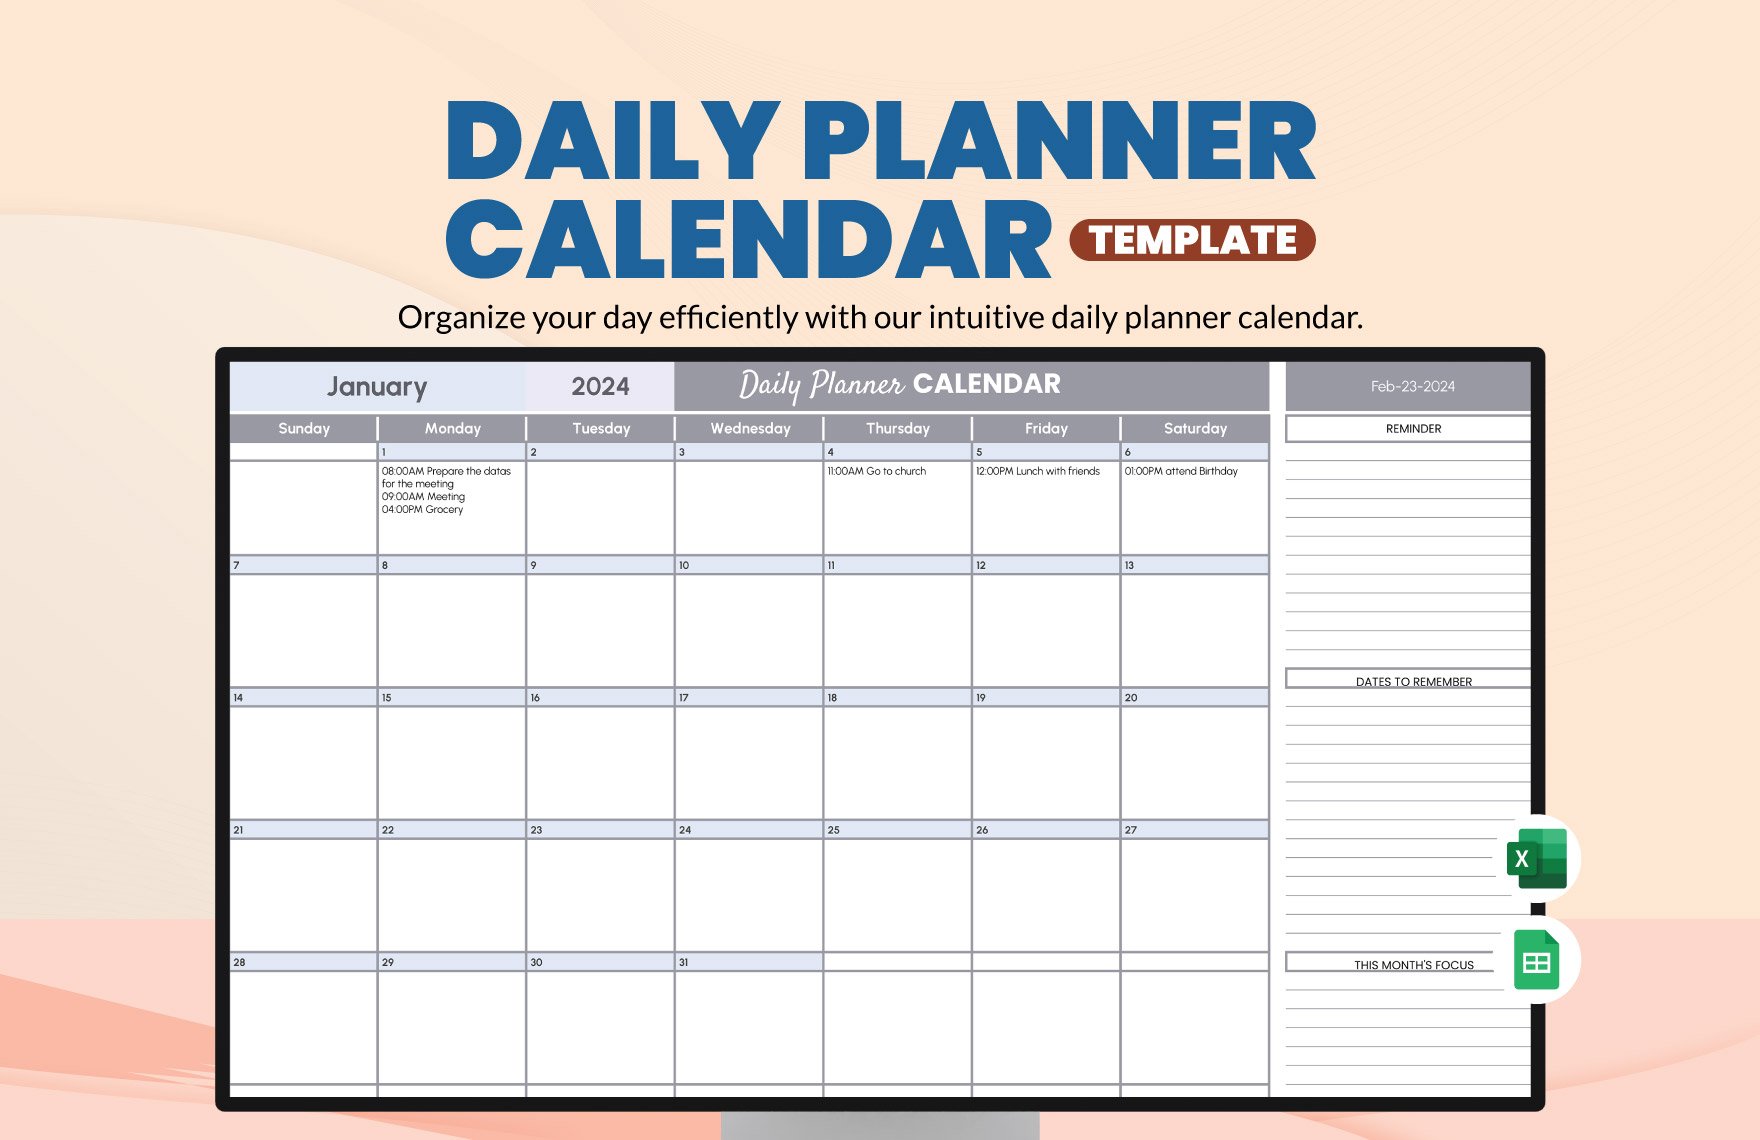 Daily Planner Calendar Template